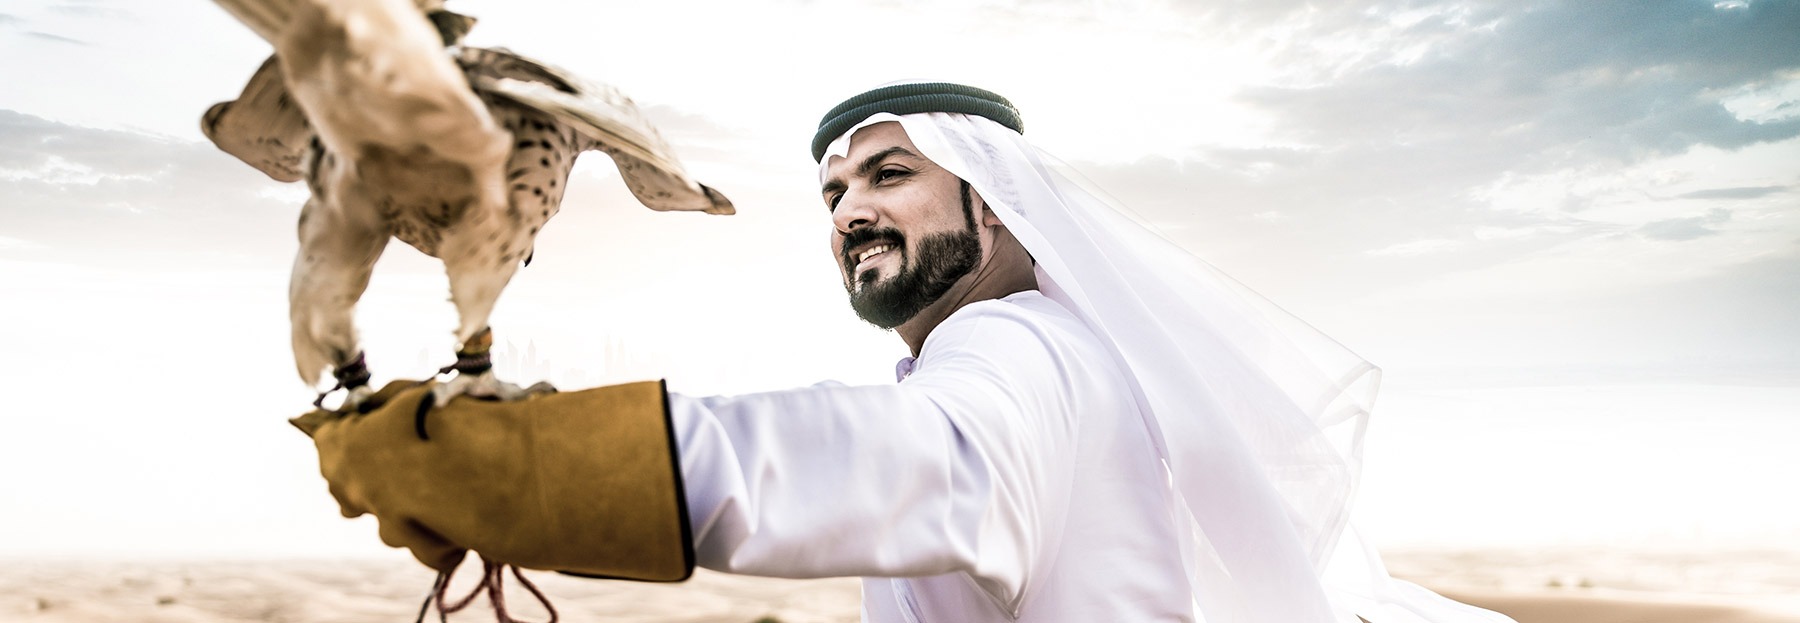 Sự phức tạp của quốc phục UAE và lưu ý cho khách du lịch - 3